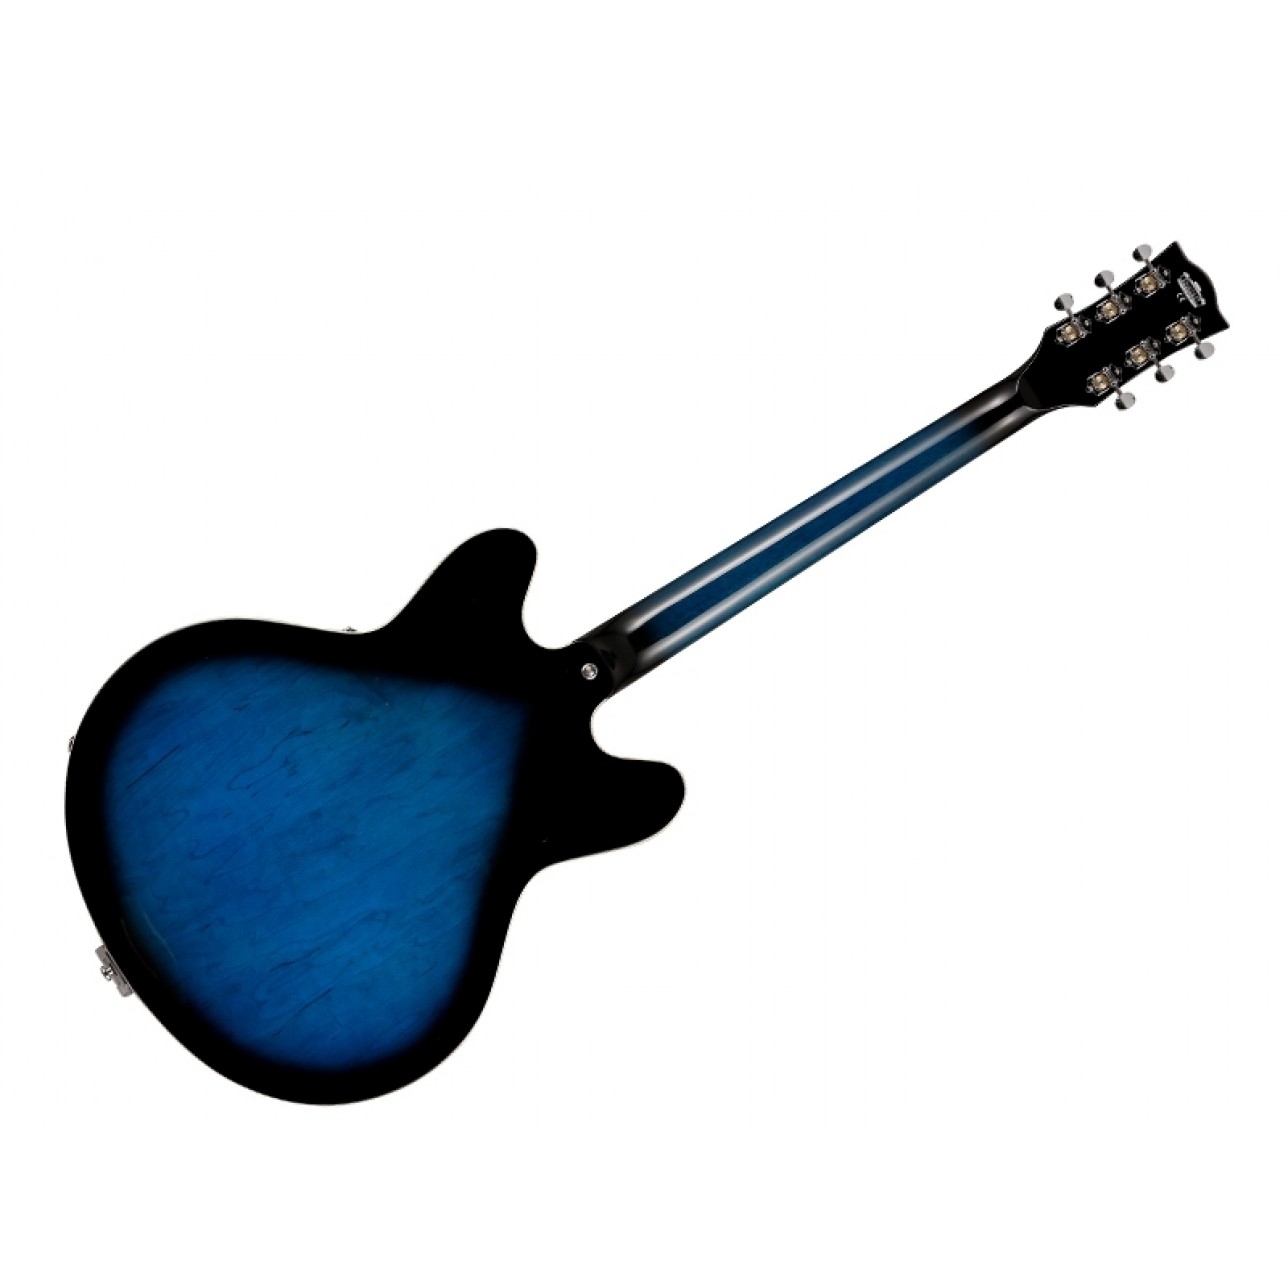 Vox Vox Bobcat V90 Bigsby Semi-Hollow Body Electric Guitar in Black